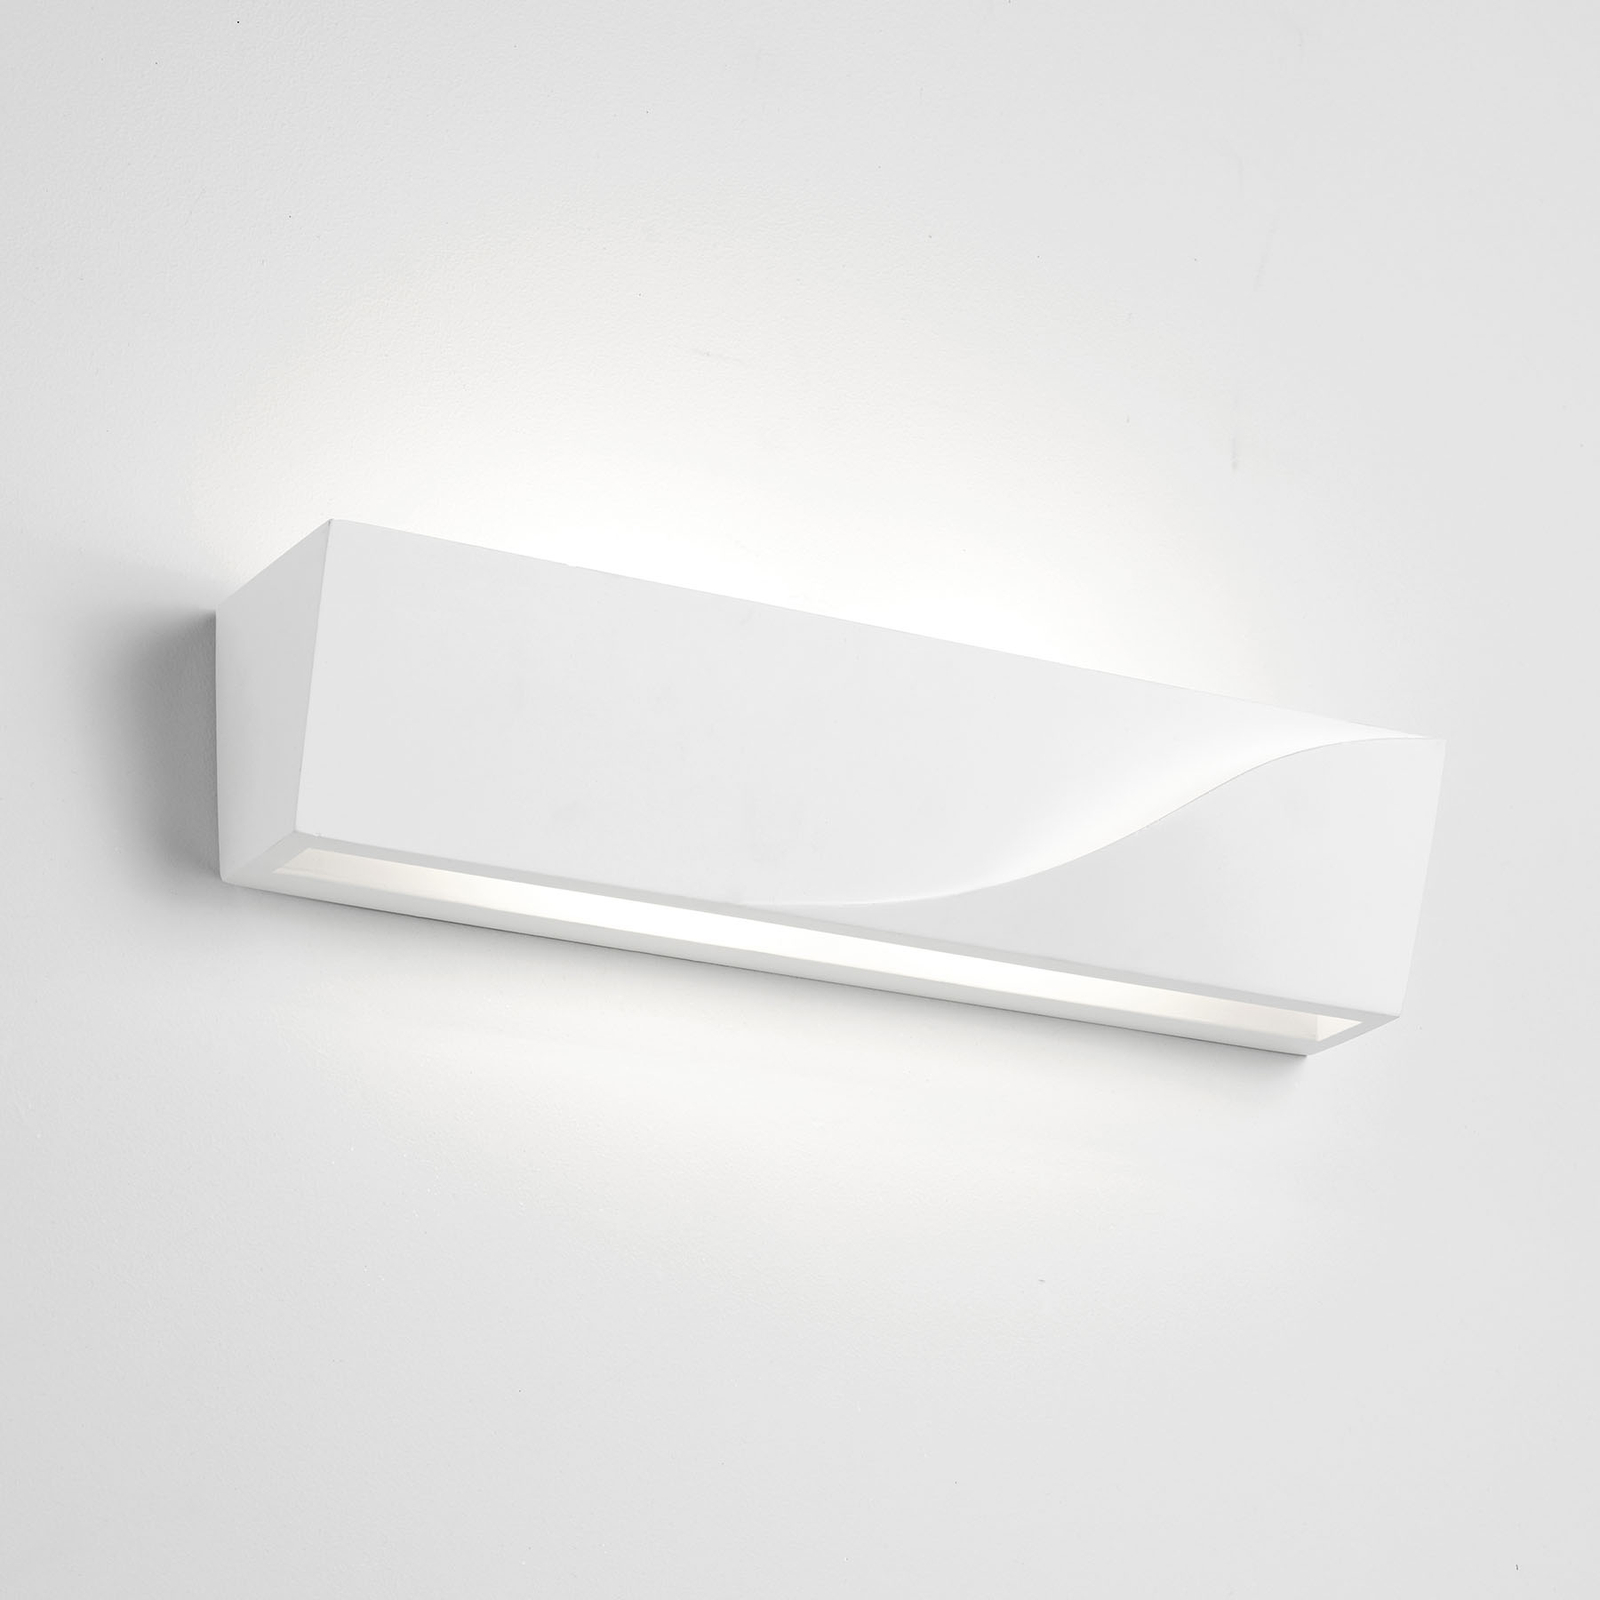 Pellene wall light, width 35.5 cm